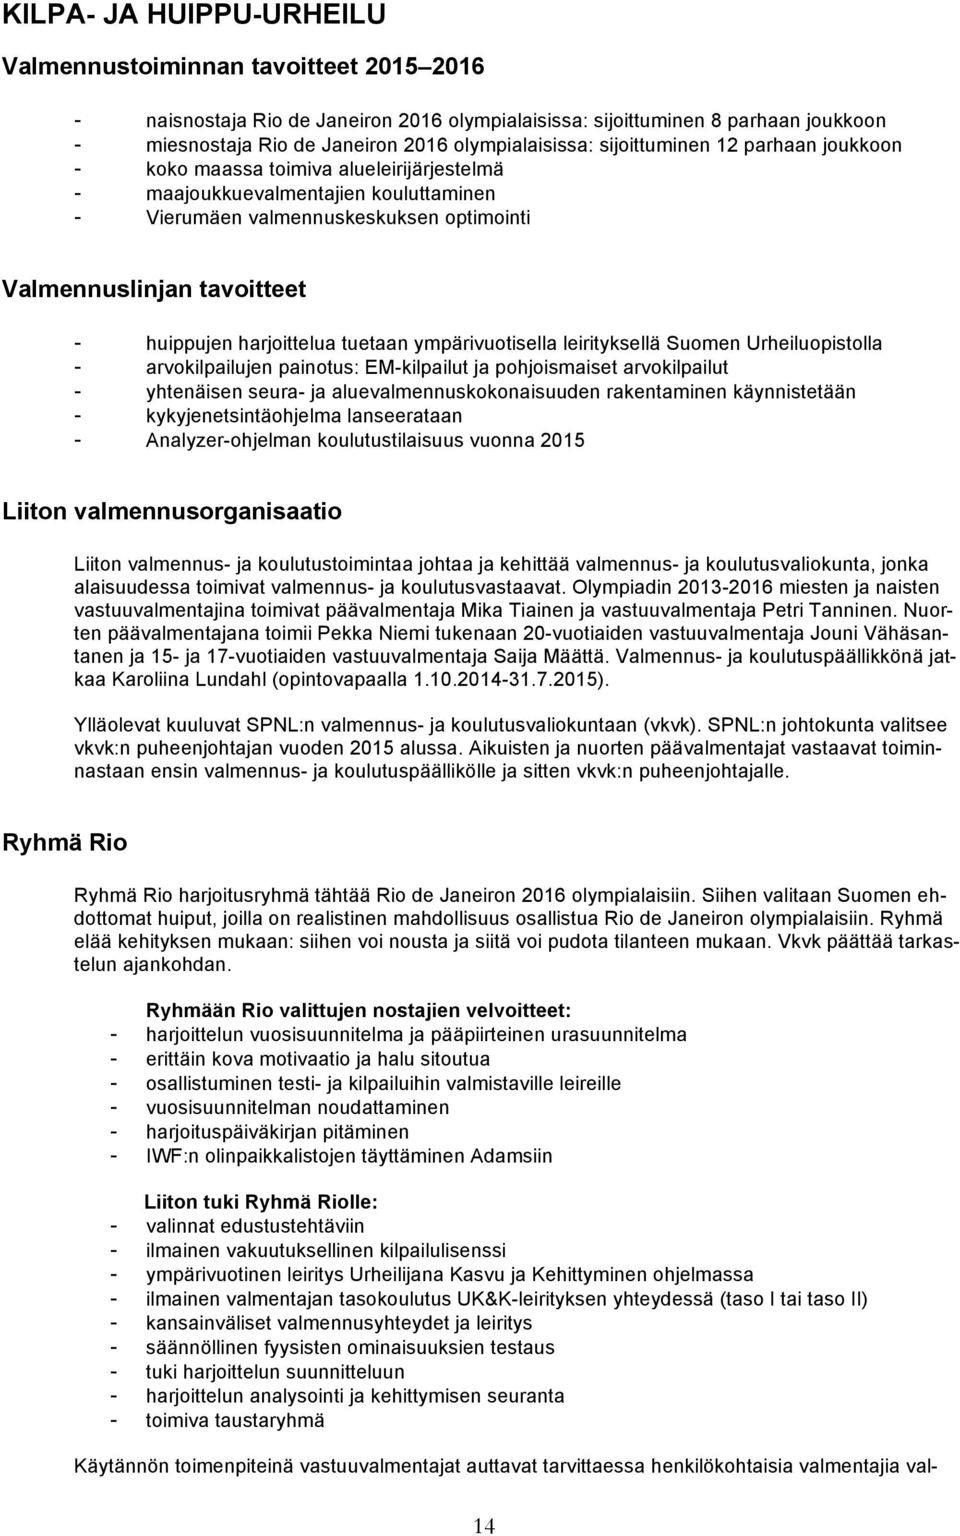 tavoitteet - huippujen harjoittelua tuetaan ympärivuotisella leirityksellä Suomen Urheiluopistolla - arvokilpailujen painotus: EM-kilpailut ja pohjoismaiset arvokilpailut - yhtenäisen seura- ja